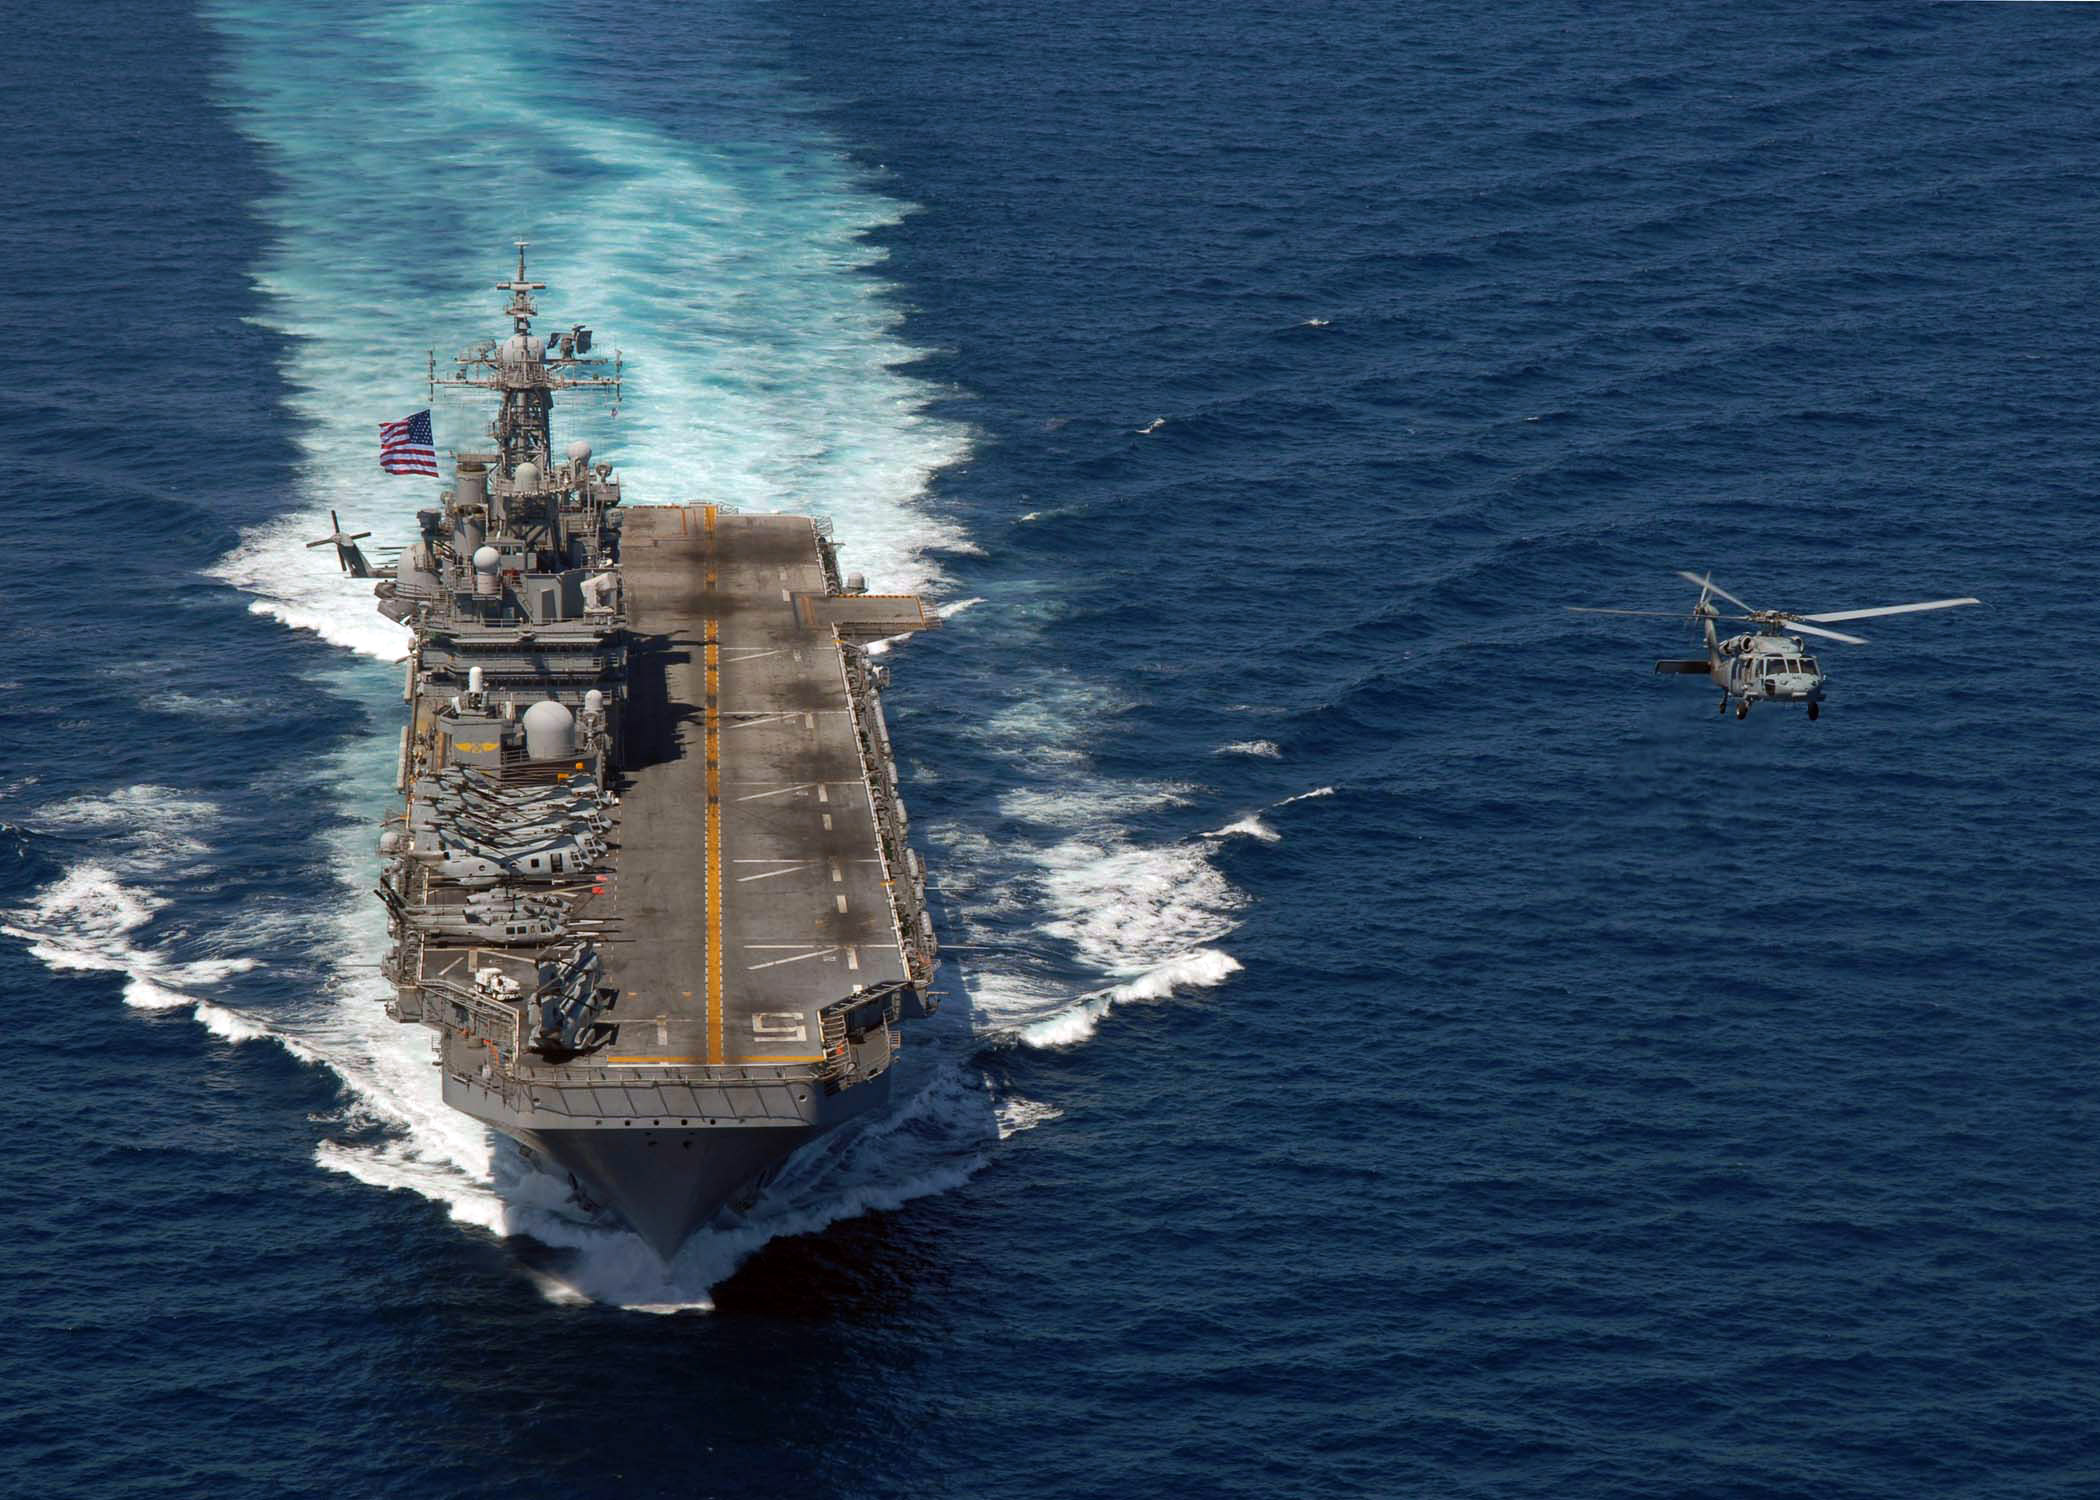 Het Amerikaanse marineschip de USS Peleliu in de Zuid-Chinese Zee. De uiteenlopende interpretaties van de Exclusieve Economische Zone vormen een terugkerende bron van conflict tussen de Amerikaanse en Chinese marine. Bron: Wikimedia